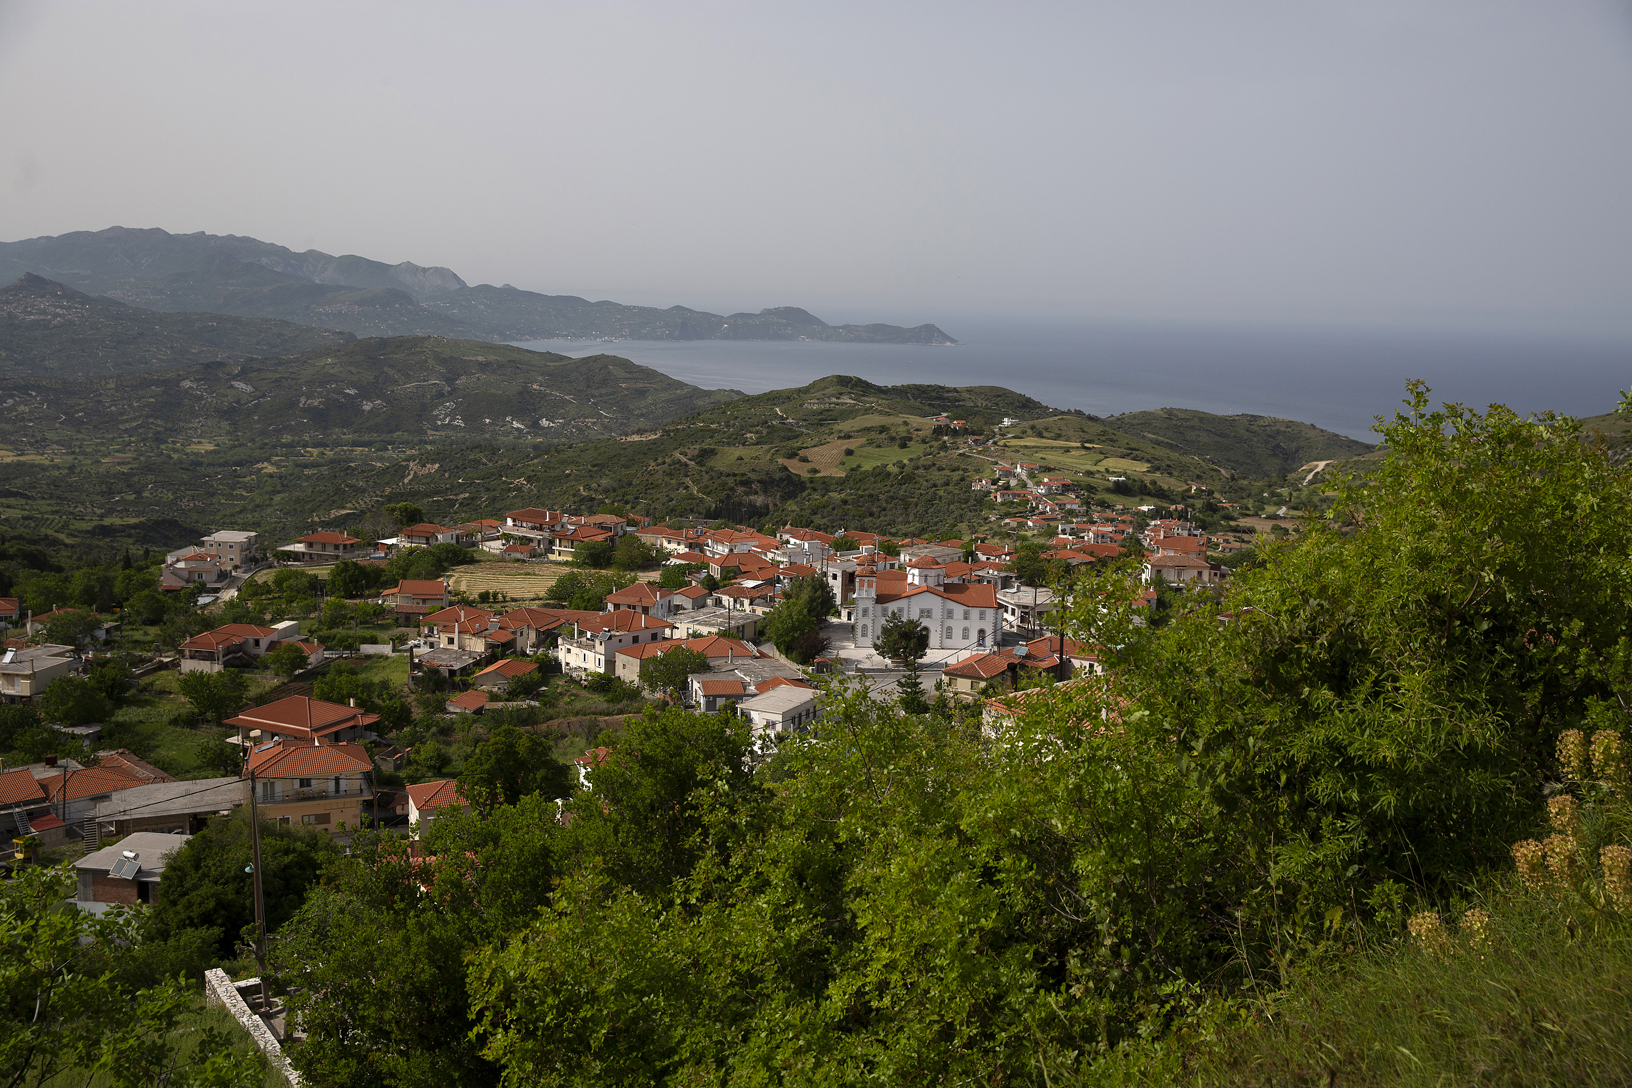 Χωριό Οκτωνιά. Φωτογραφία: ©Βασίλης Συκάς, για τον Δήμο Κύμης-Αλιβερίου